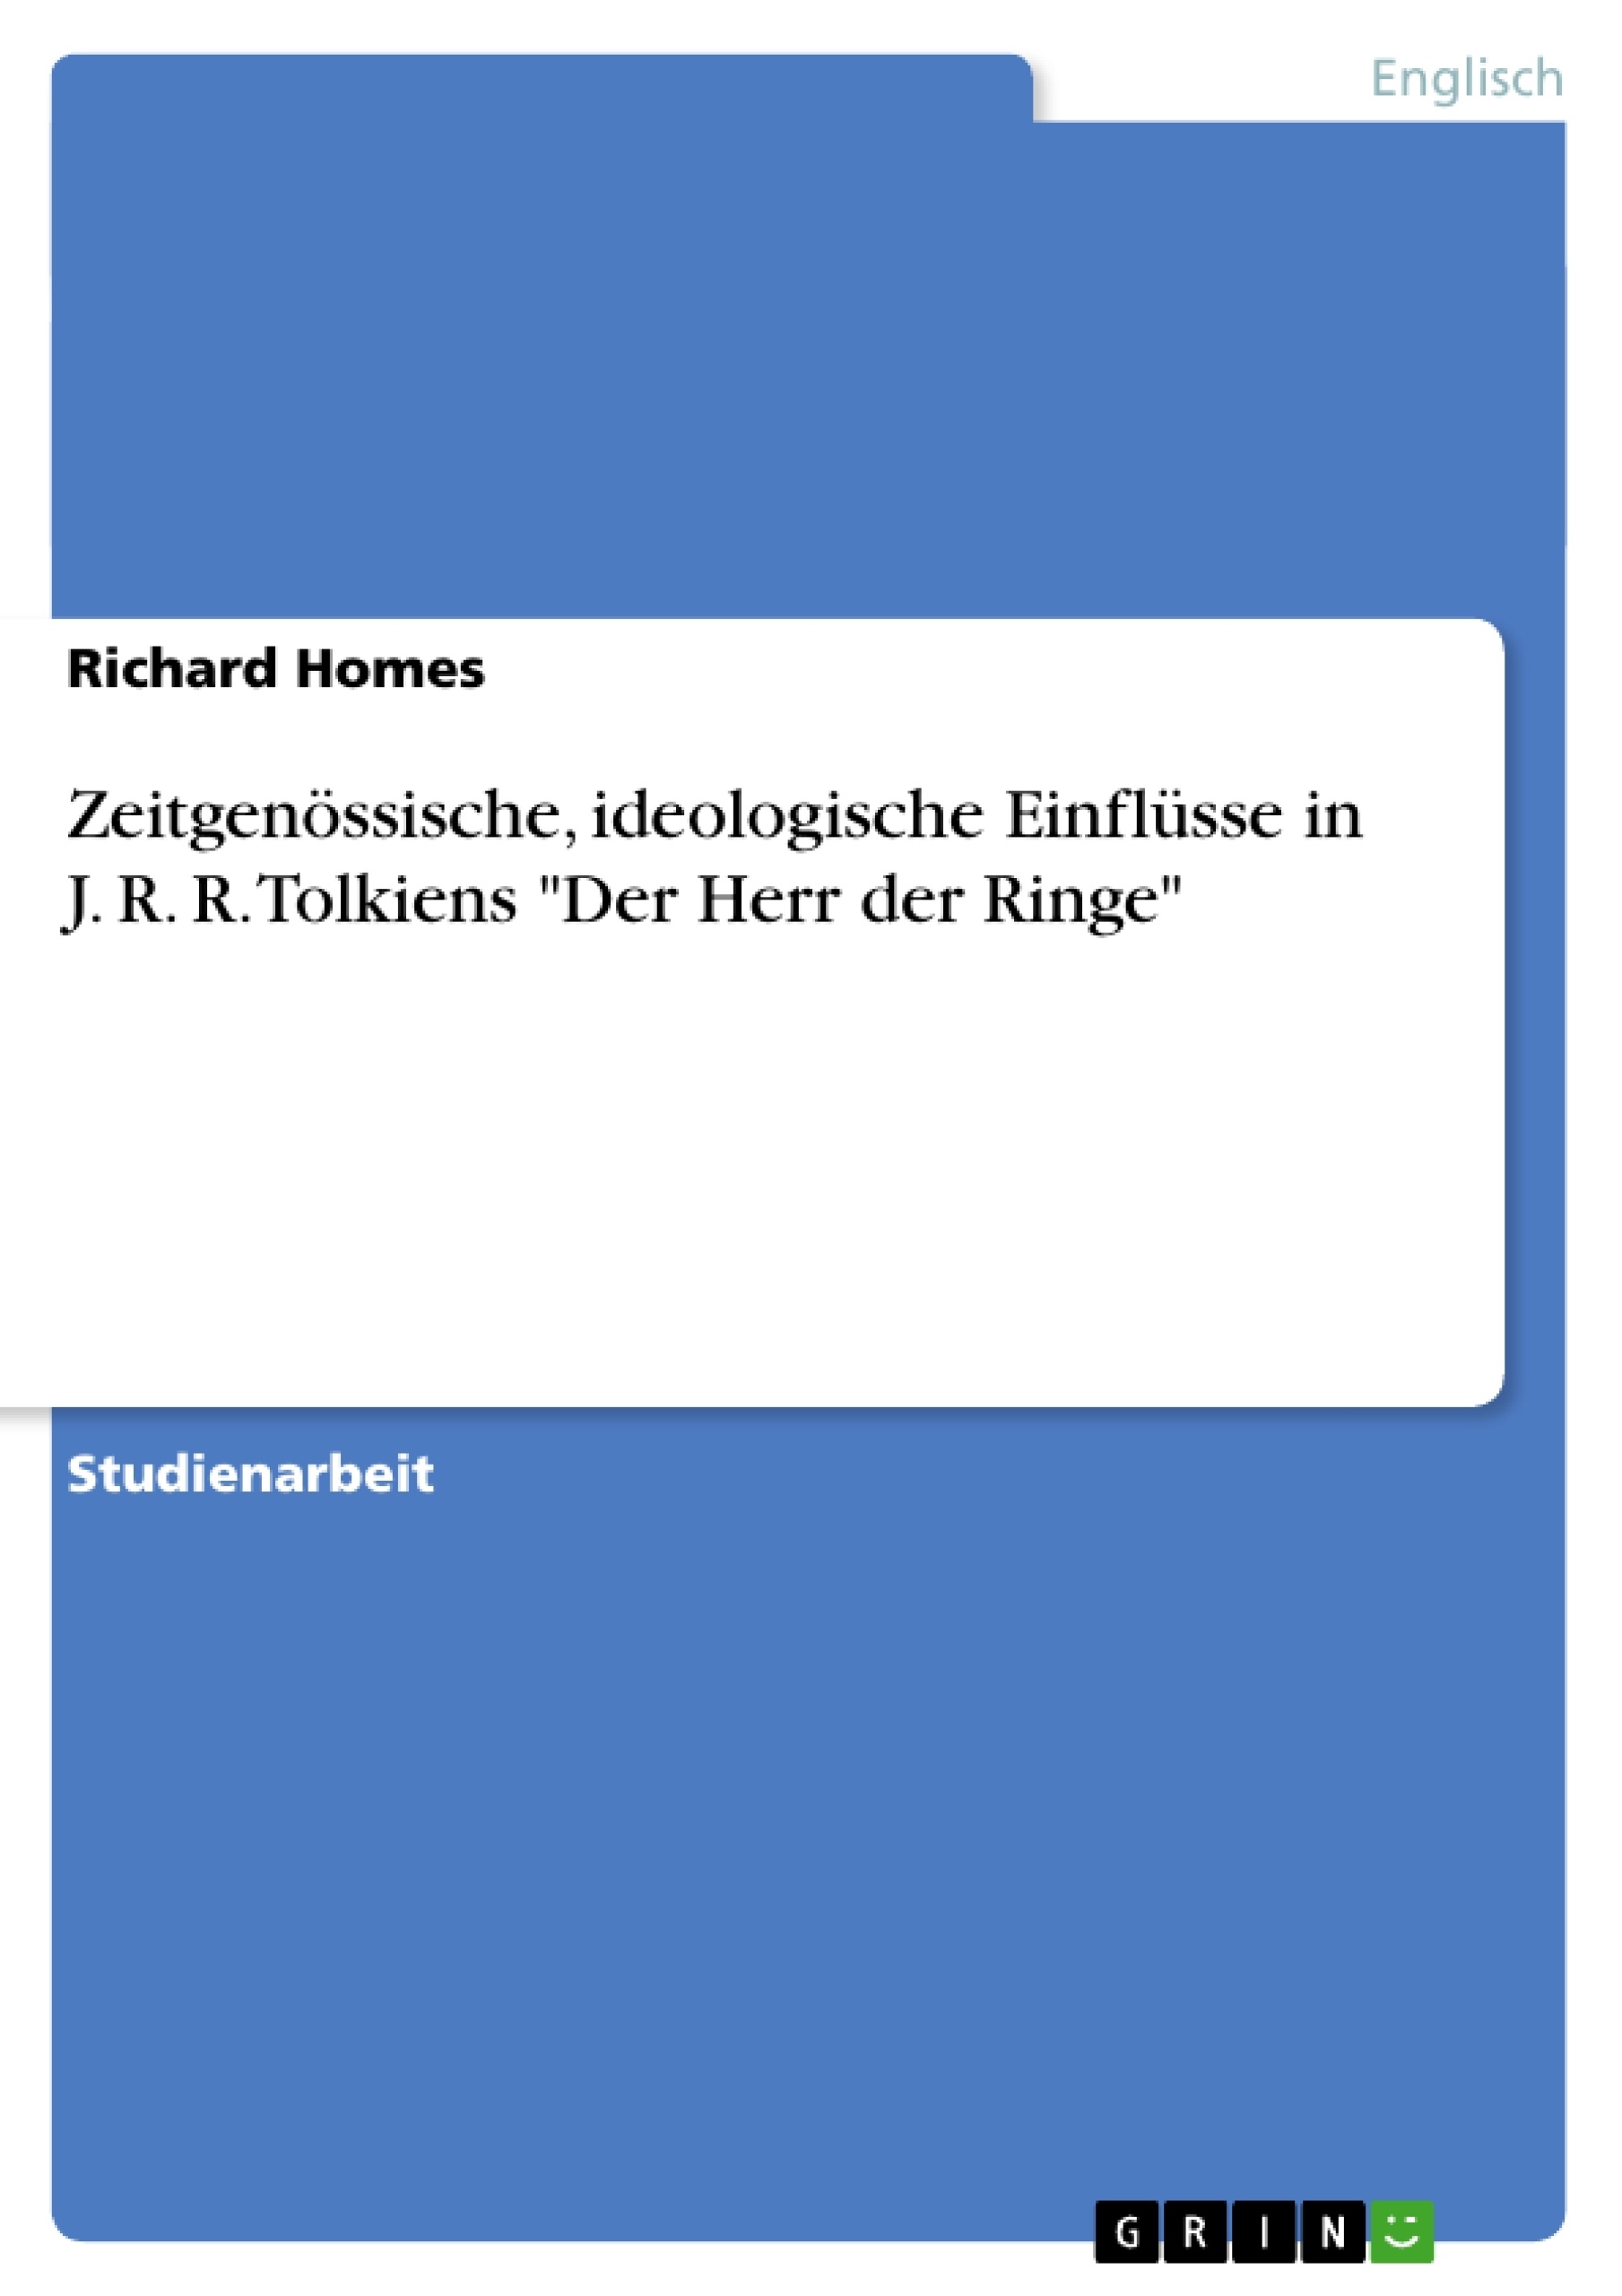 Title: Zeitgenössische, ideologische Einflüsse in J. R. R. Tolkiens "Der Herr der Ringe"